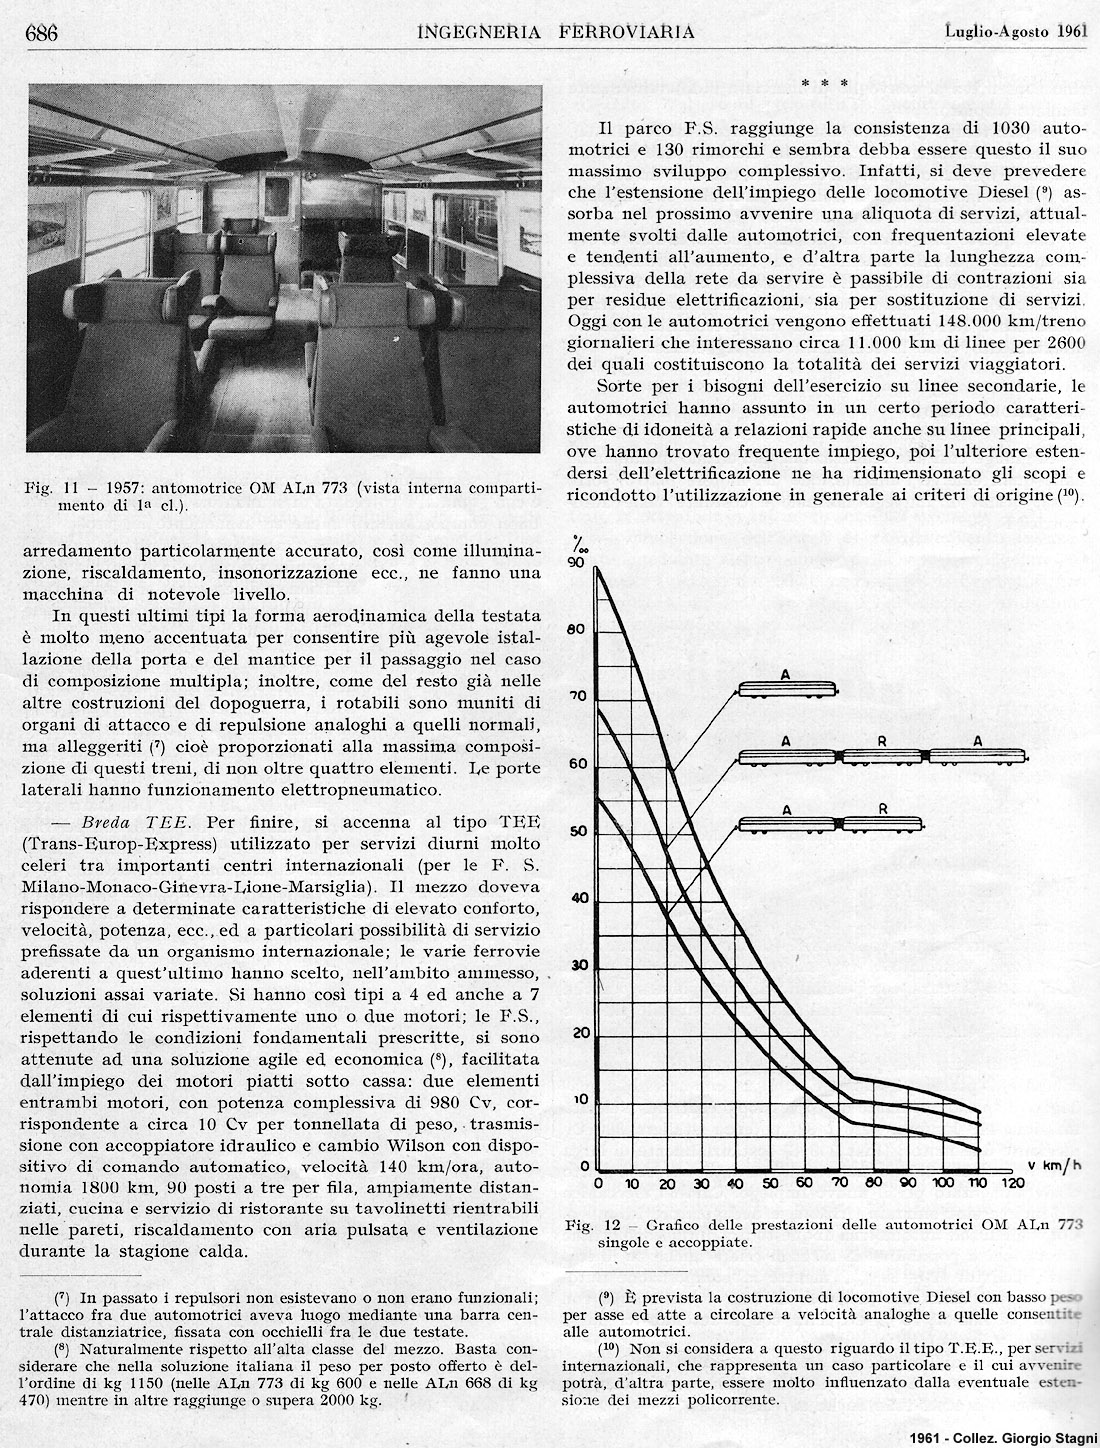 I documenti - Ingegneria ferroviaria (1961).